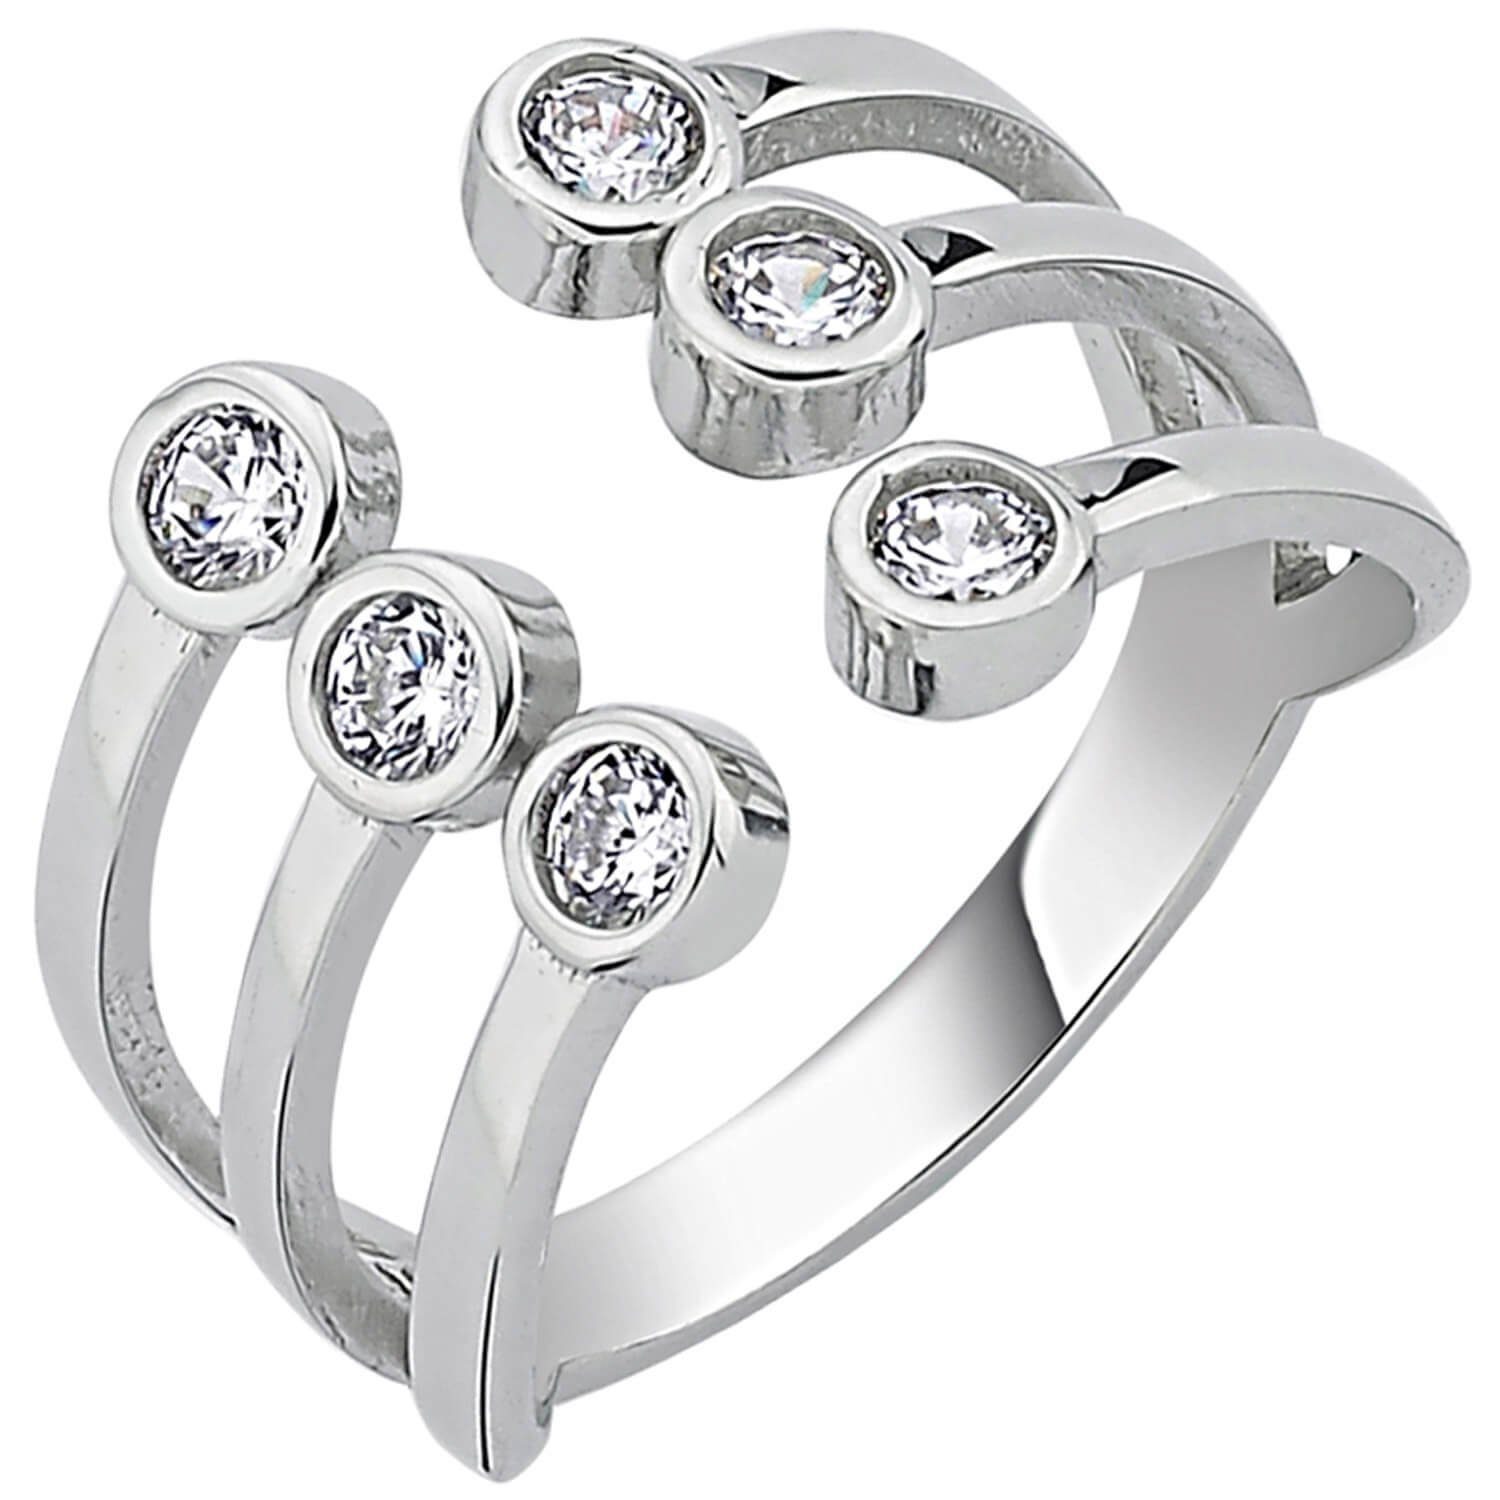 Schmuck Krone Silberring Offener Ring Damenring aus 925 Silber rhodiniert 6  Zirkonia breiter Fingerring, Silber 925